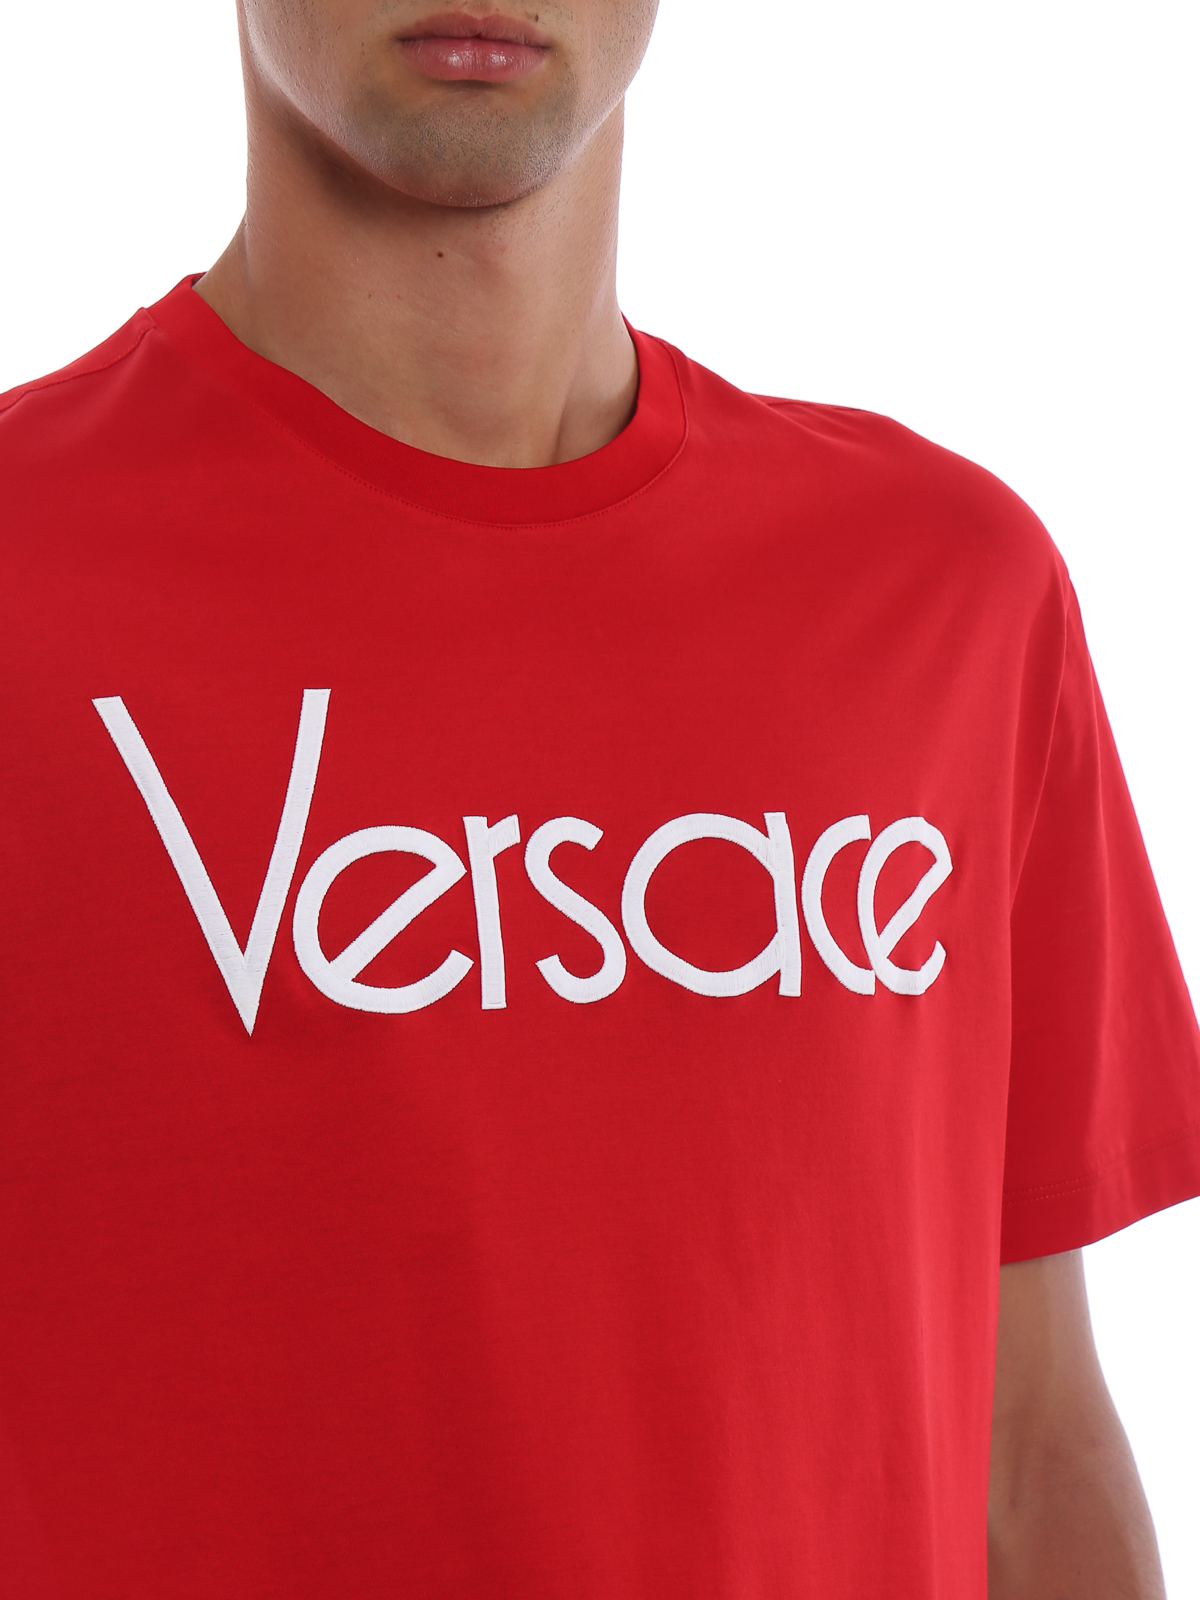 versace t shirt red